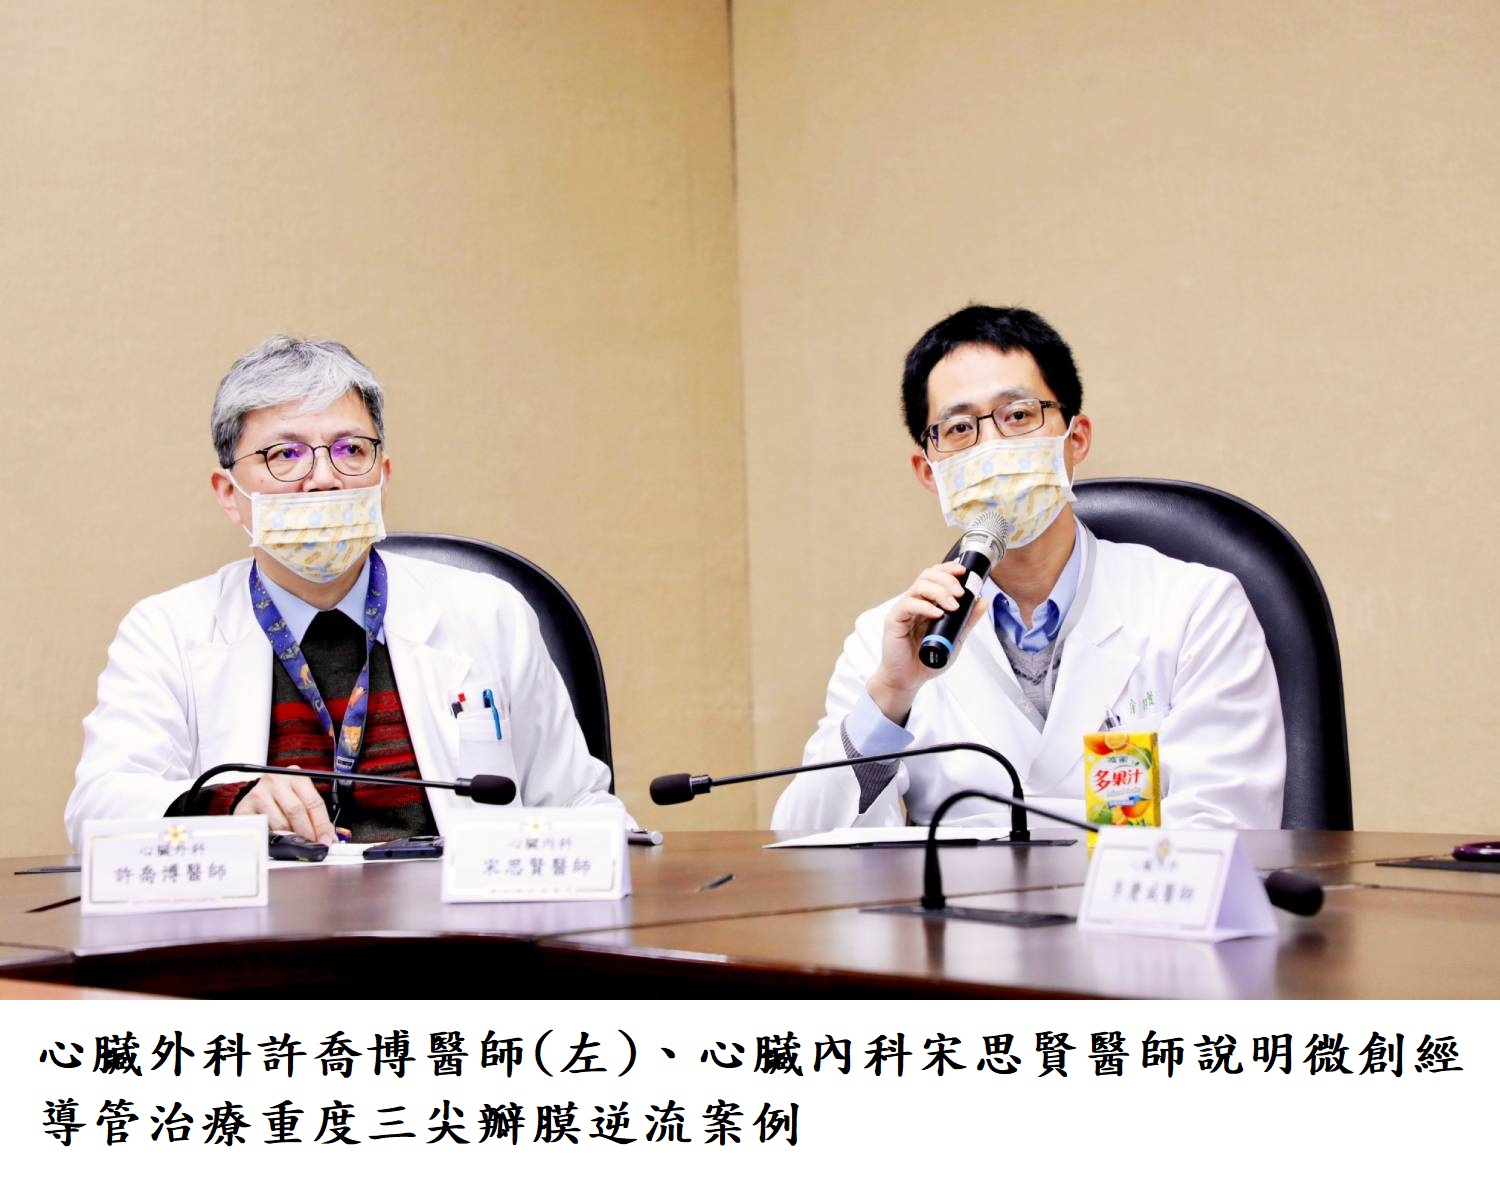 心臟外科許喬博醫師(左).心臟內科宋思賢醫師說明微創經導管治療重度三尖瓣膜逆流案例